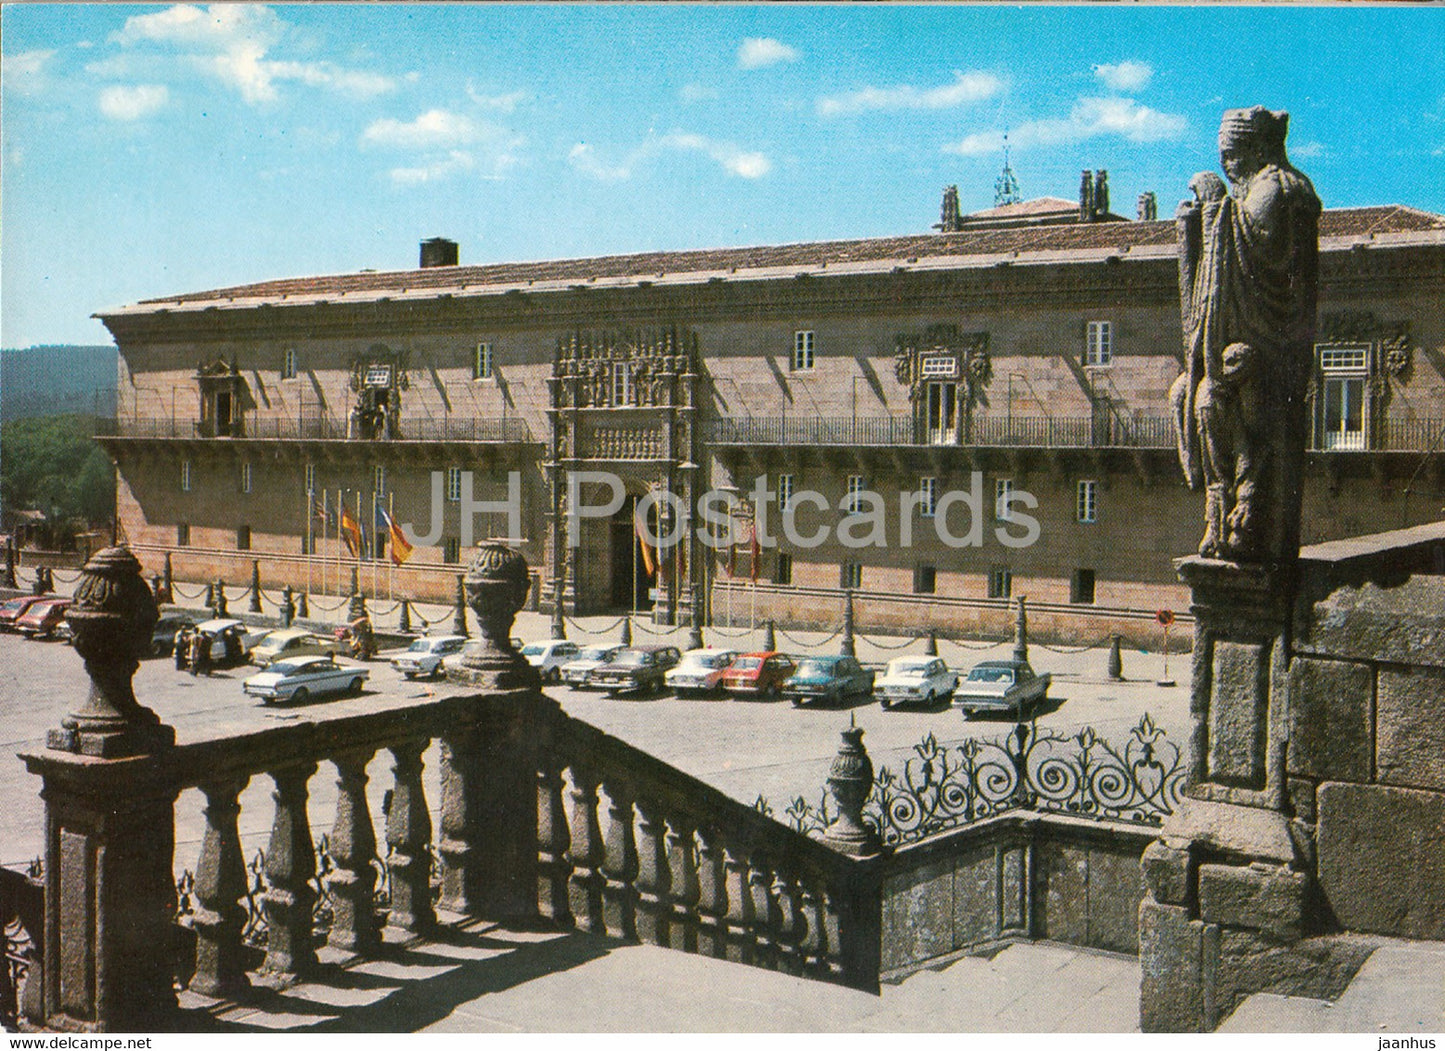 Santiago de Compostela - Hostal de los Reyes Catolicos - The Inn Los Reyes Catolicos - 3216 - Spain - unused - JH Postcards